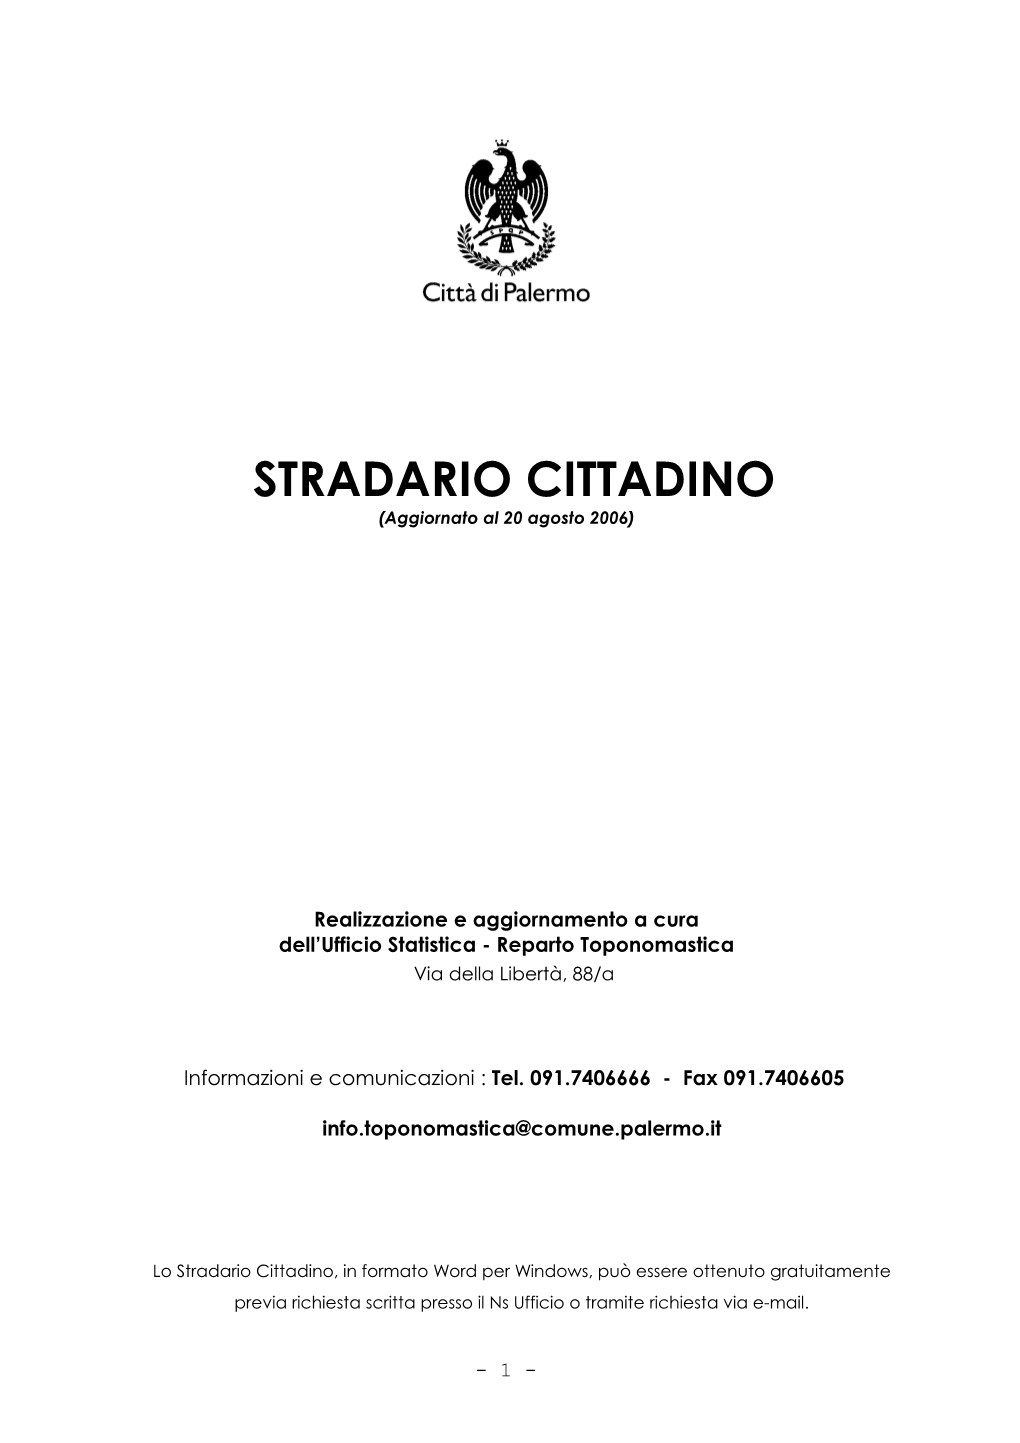 STRADARIO CITTADINO (Aggiornato Al 20 Agosto 2006)